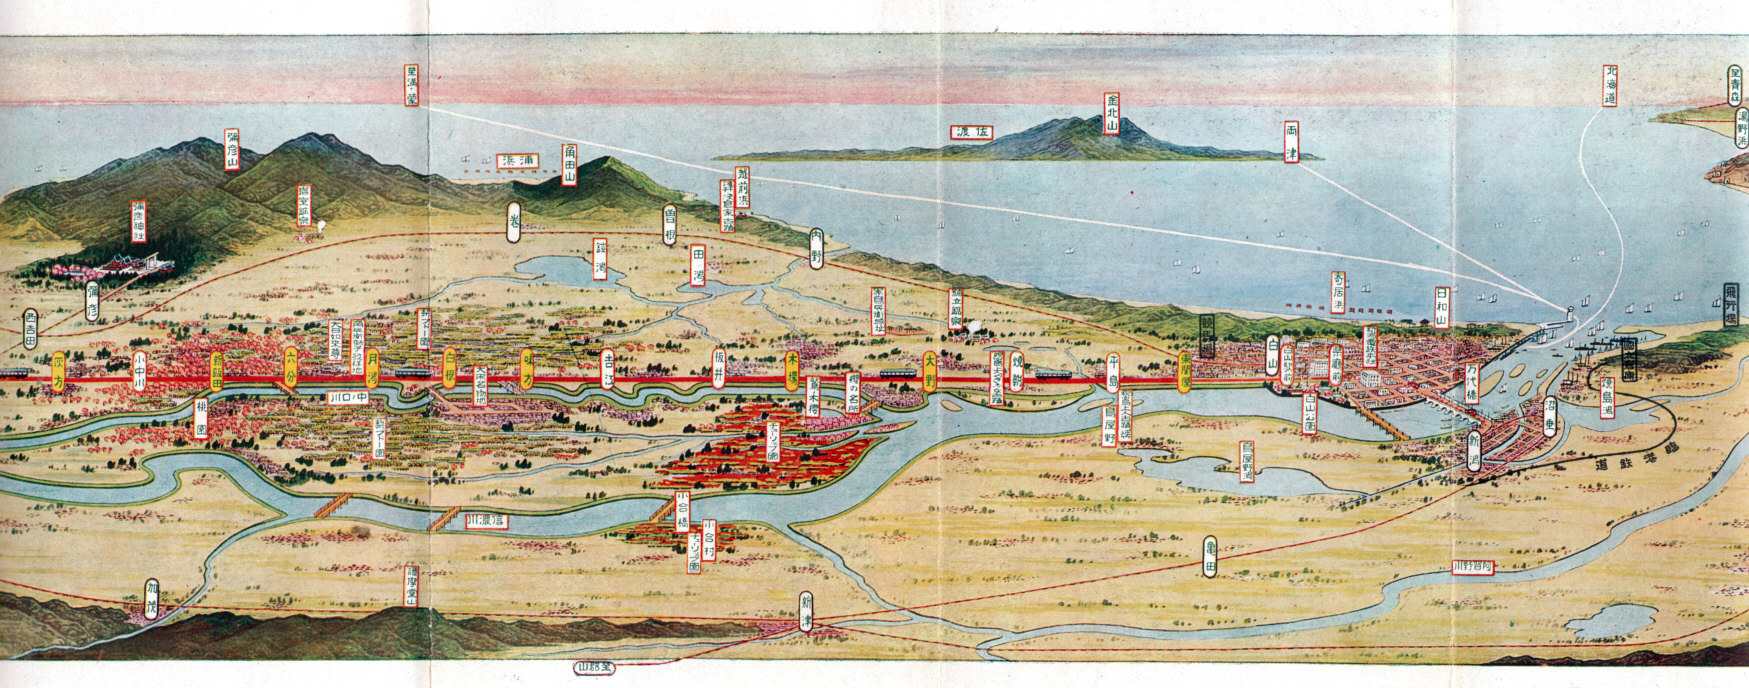 初三郎の鳥瞰図は面白い : にいがた文明開化ハイカラ館